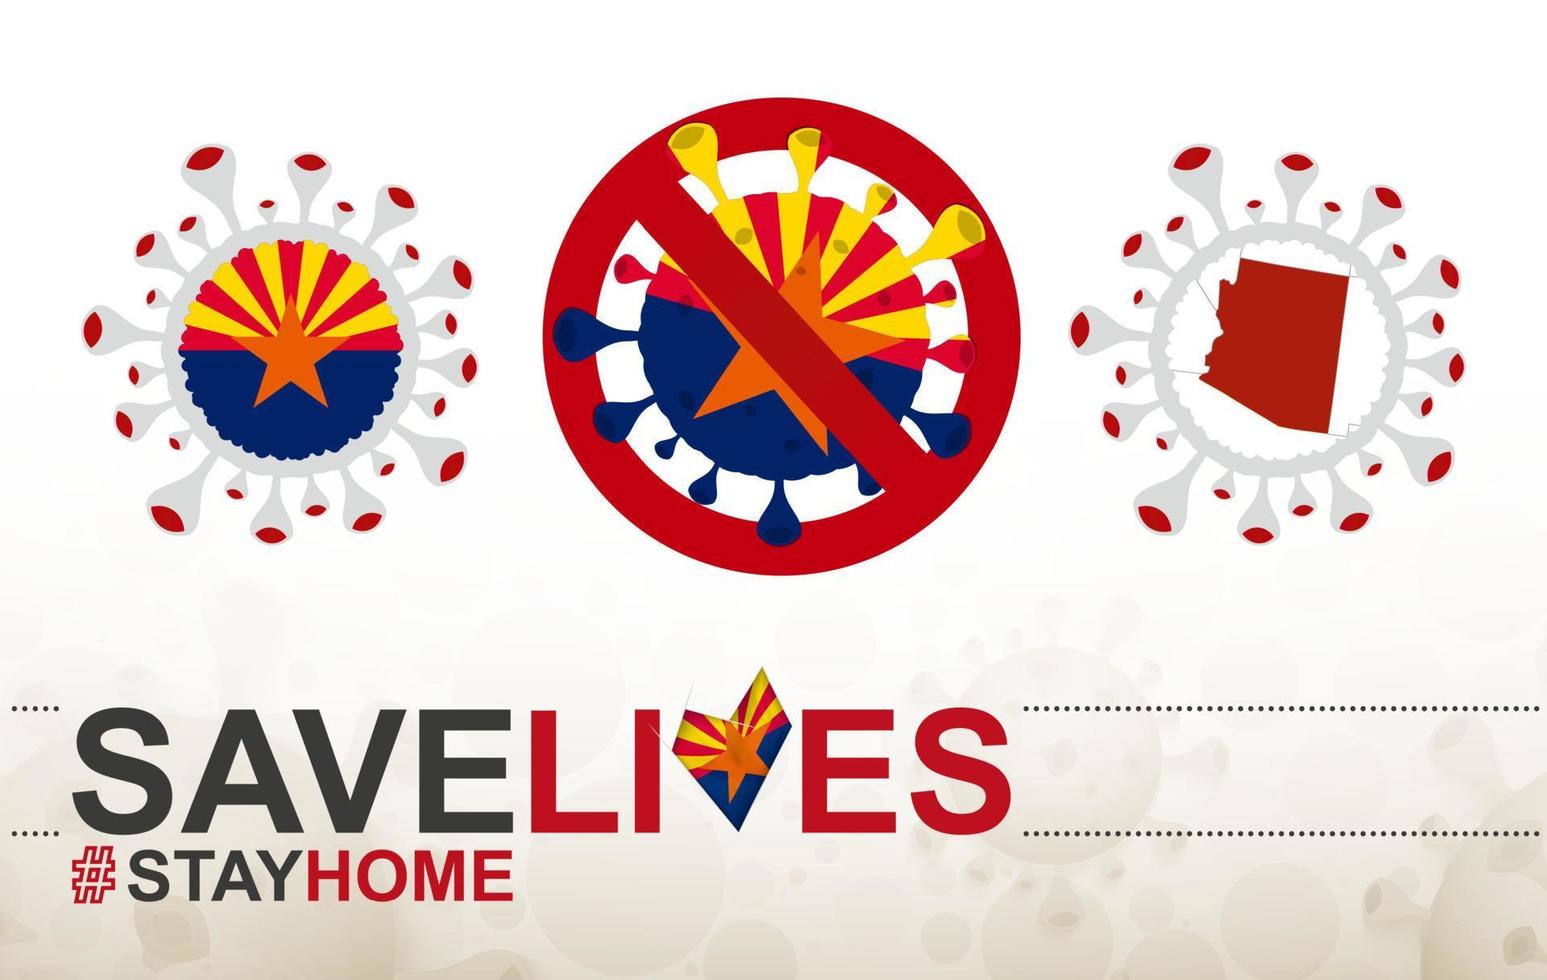 coronavirus cell med oss staten Arizona flagga och karta. stoppa covid-19-skylt, slogan rädda liv stanna hemma med Arizonas flagga vektor